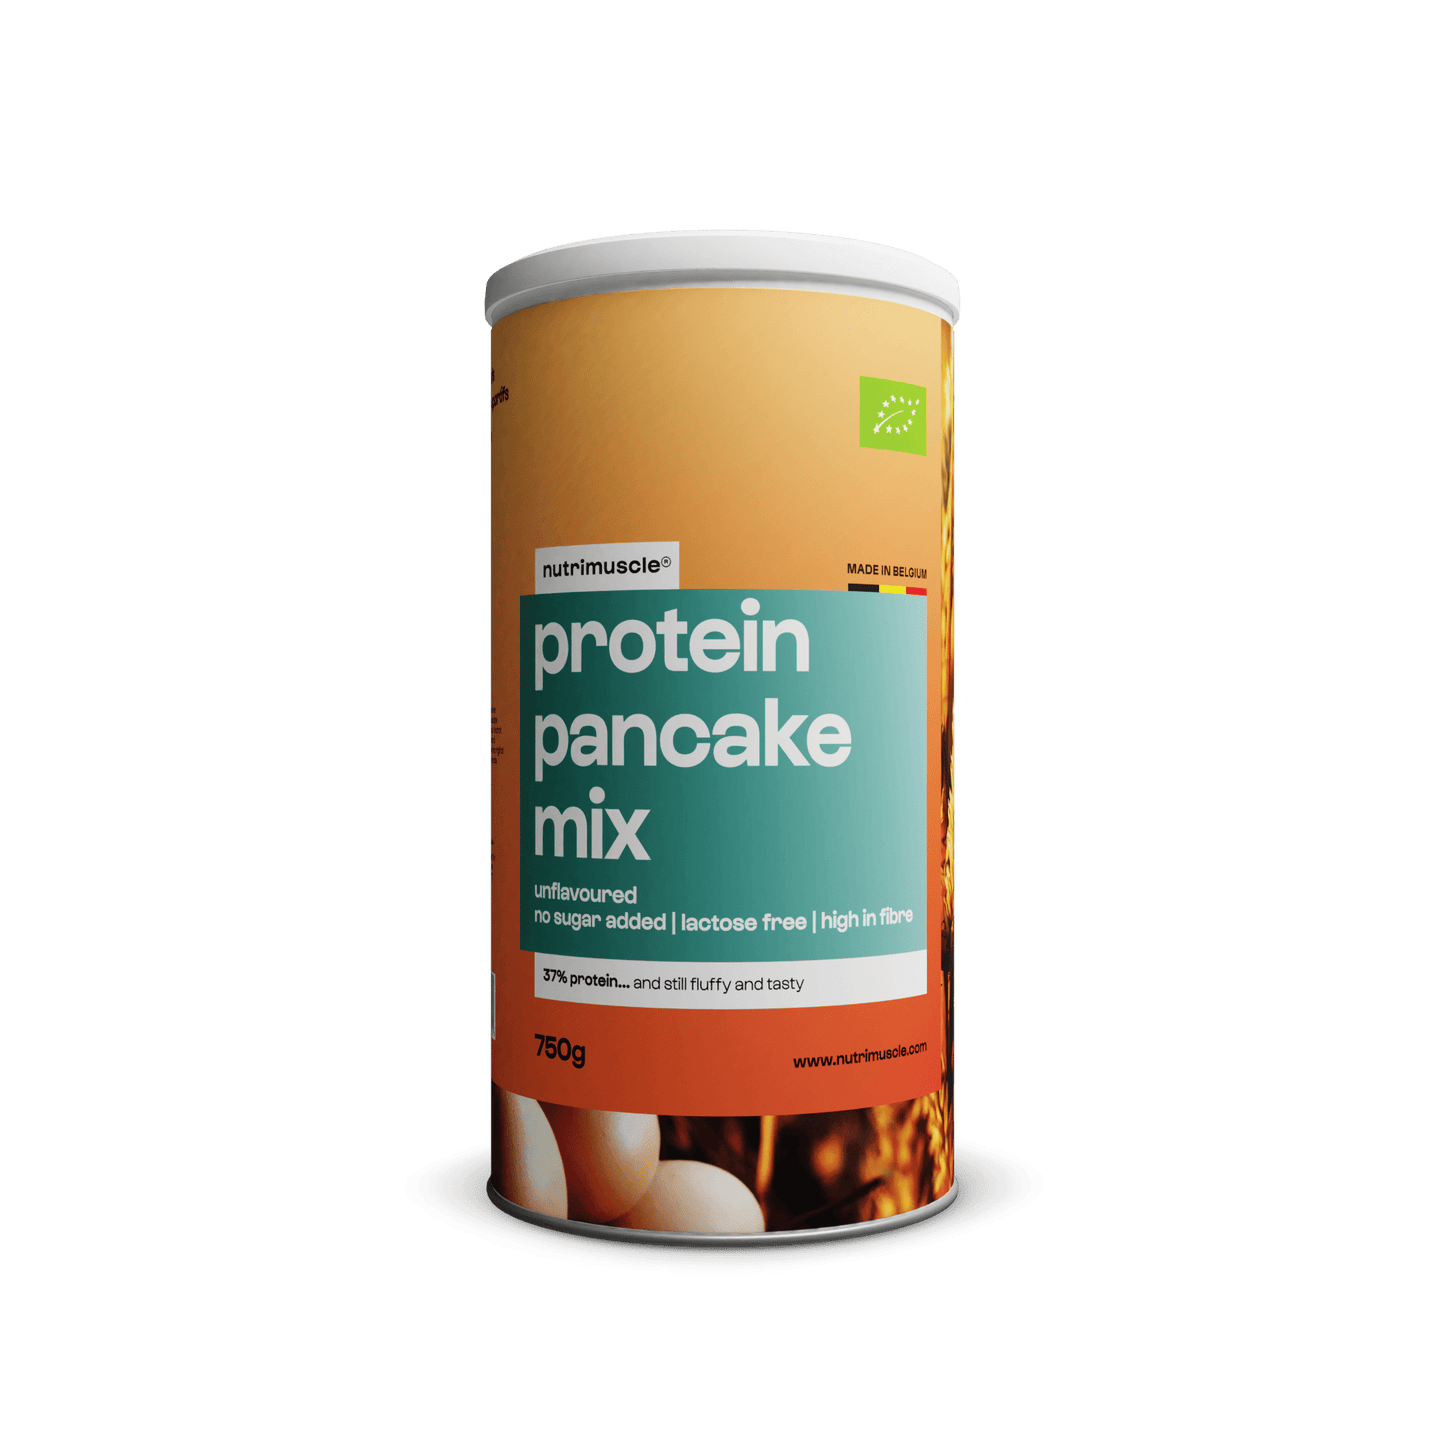 Nutrimuscle Protéines 750 g / Nature Mix pour pancakes protéinés bio